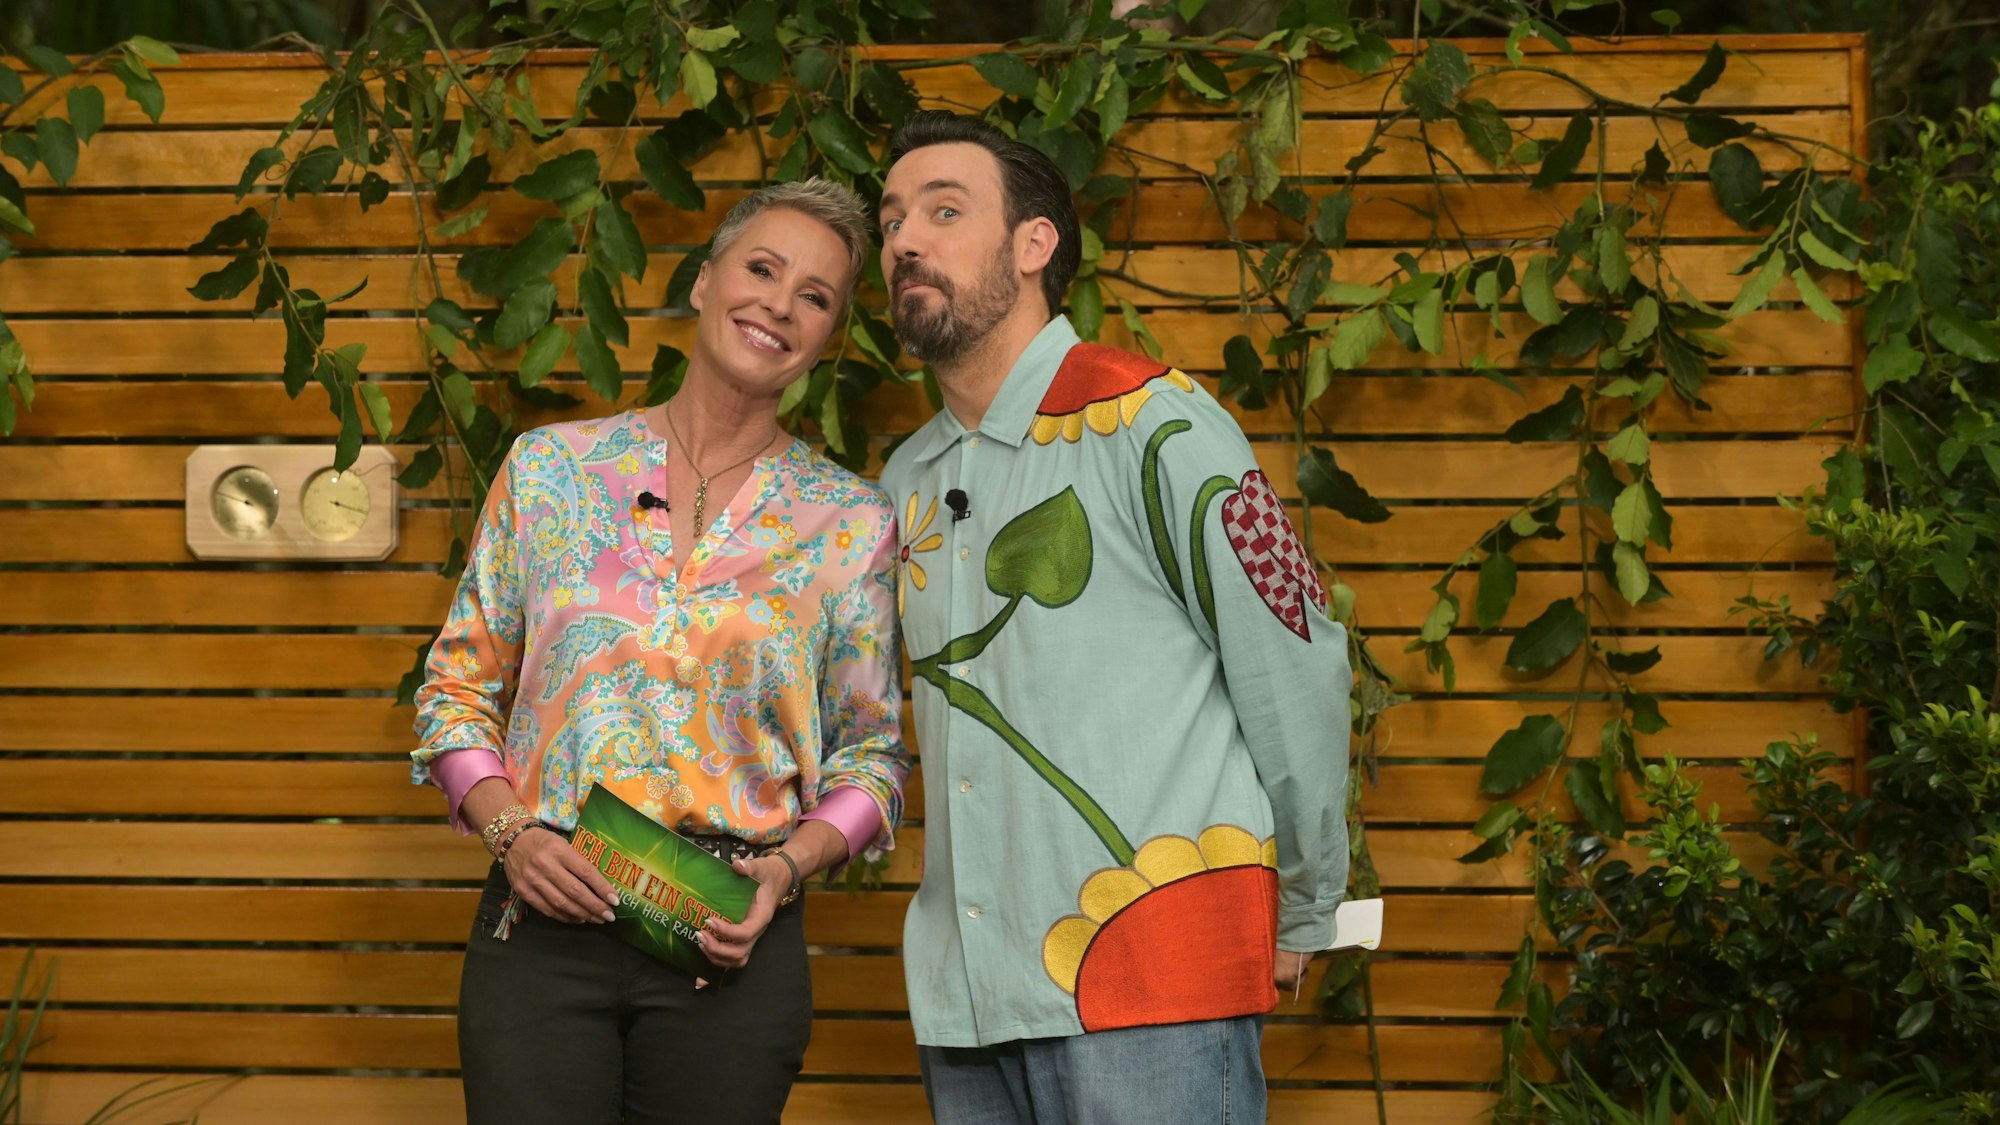 Die beiden Moderatoren Sonja Zietlow und Jan Köppen in der aktuellen Staffel des Dschungelcamps.